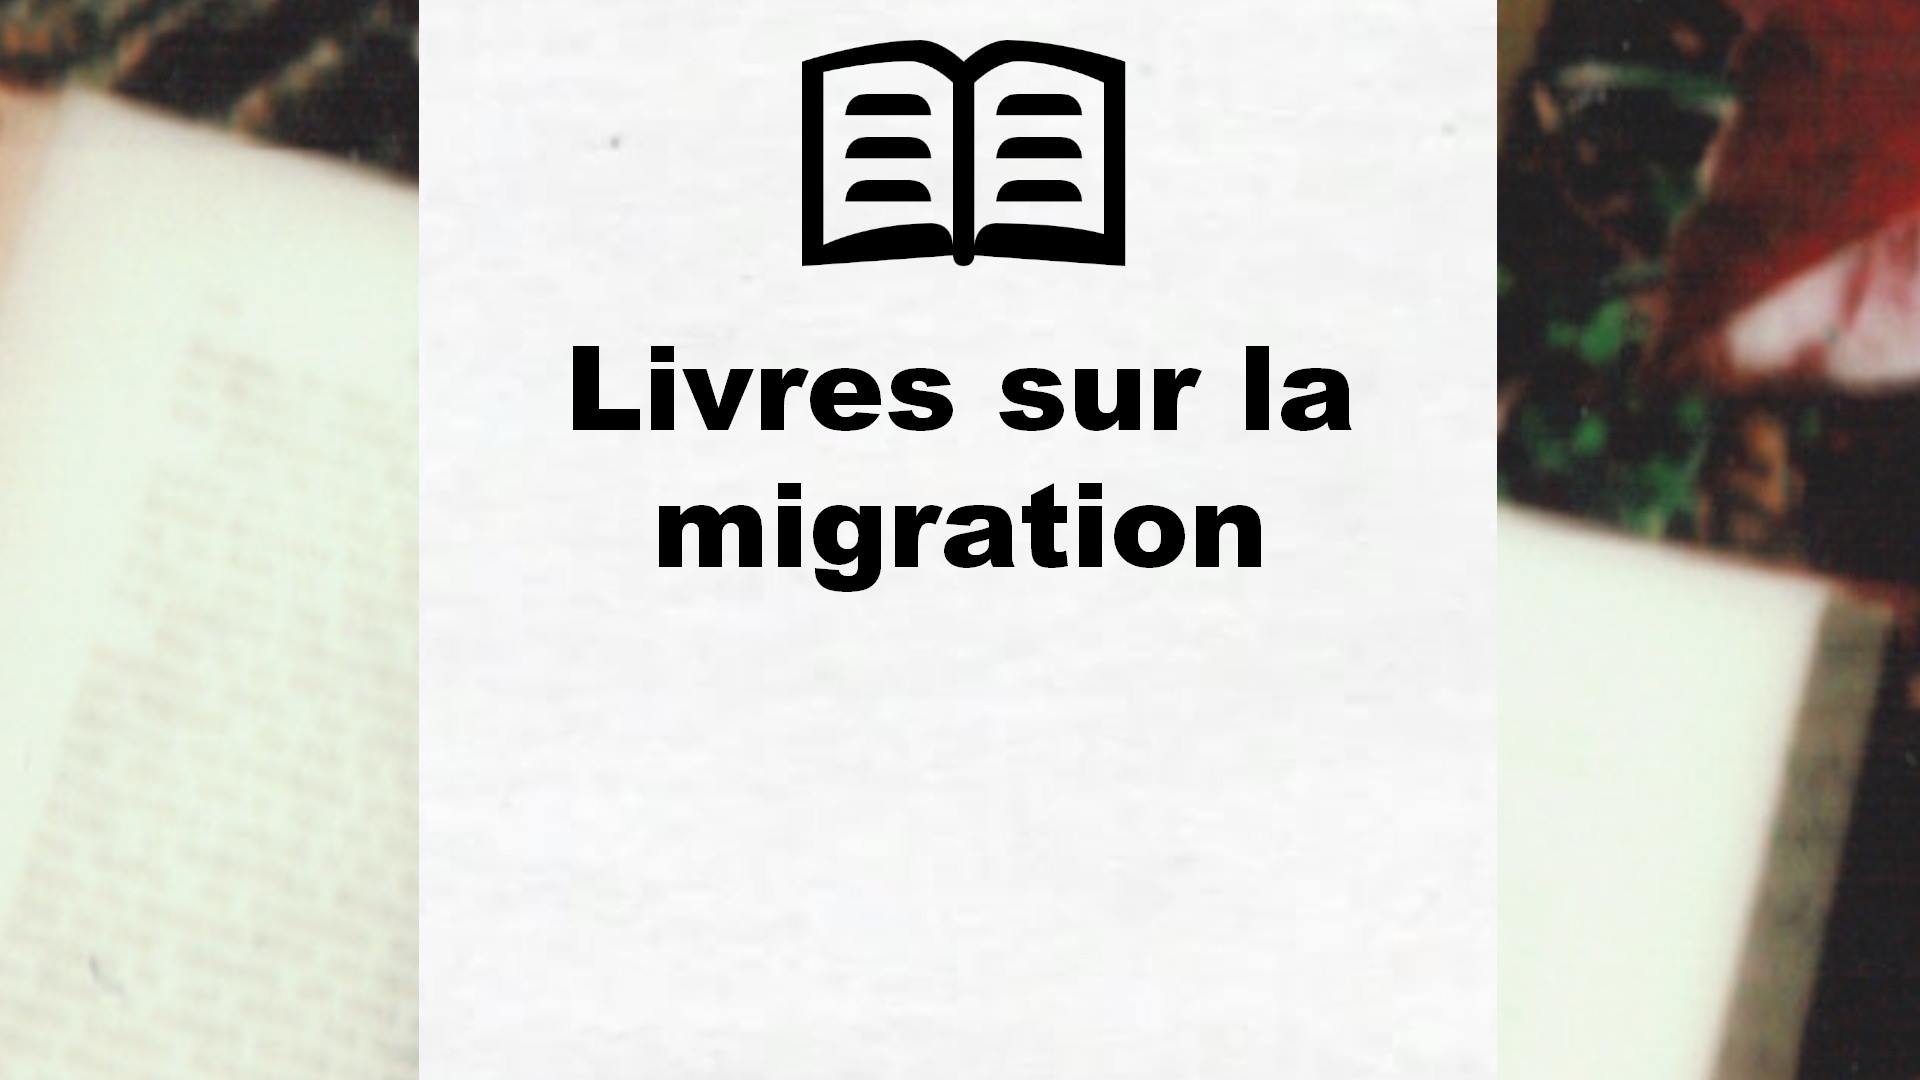 Livres sur la migration